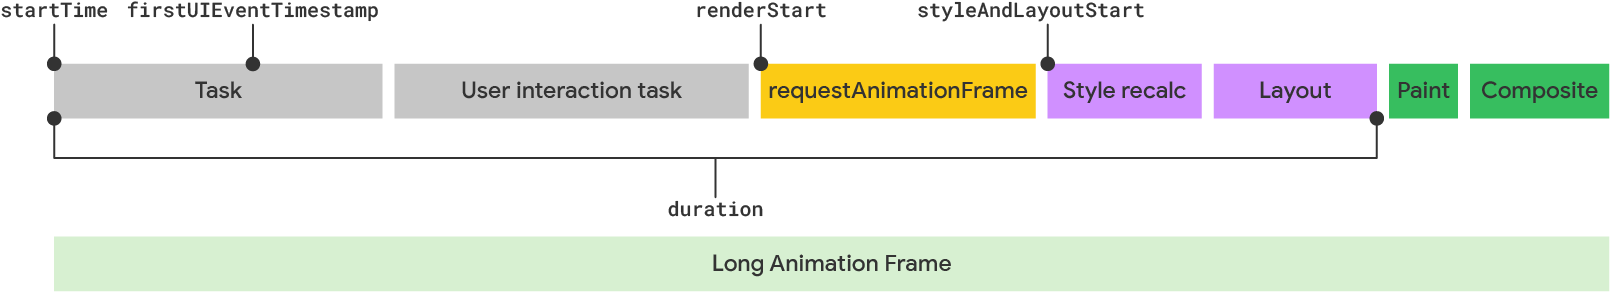 Una visualizzazione di un lungo frame di animazione secondo il modello LoAF.